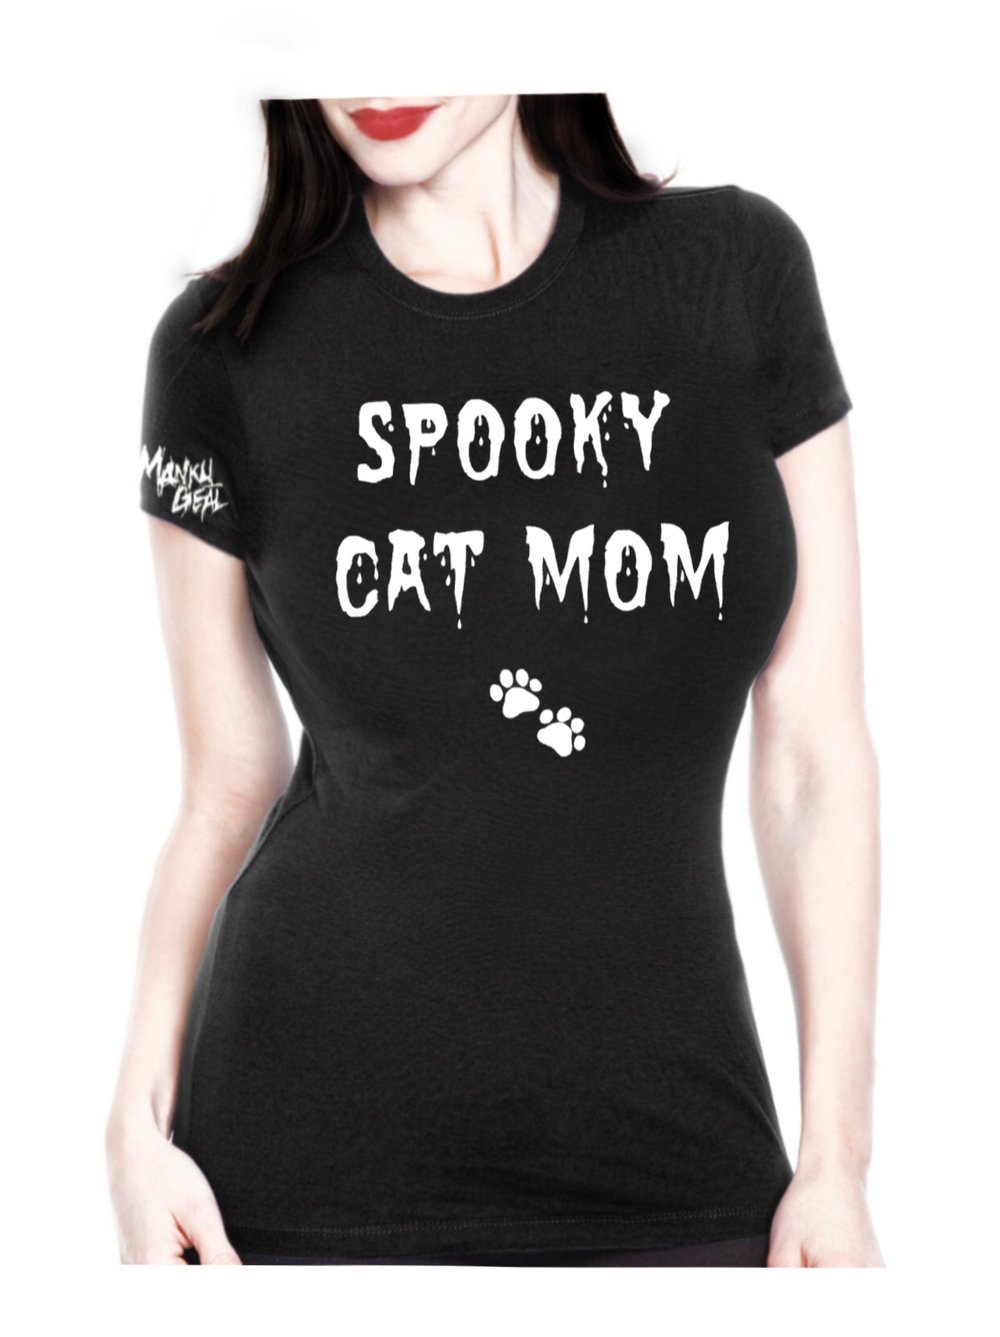 Spooky Cat Mom Women’s Tee